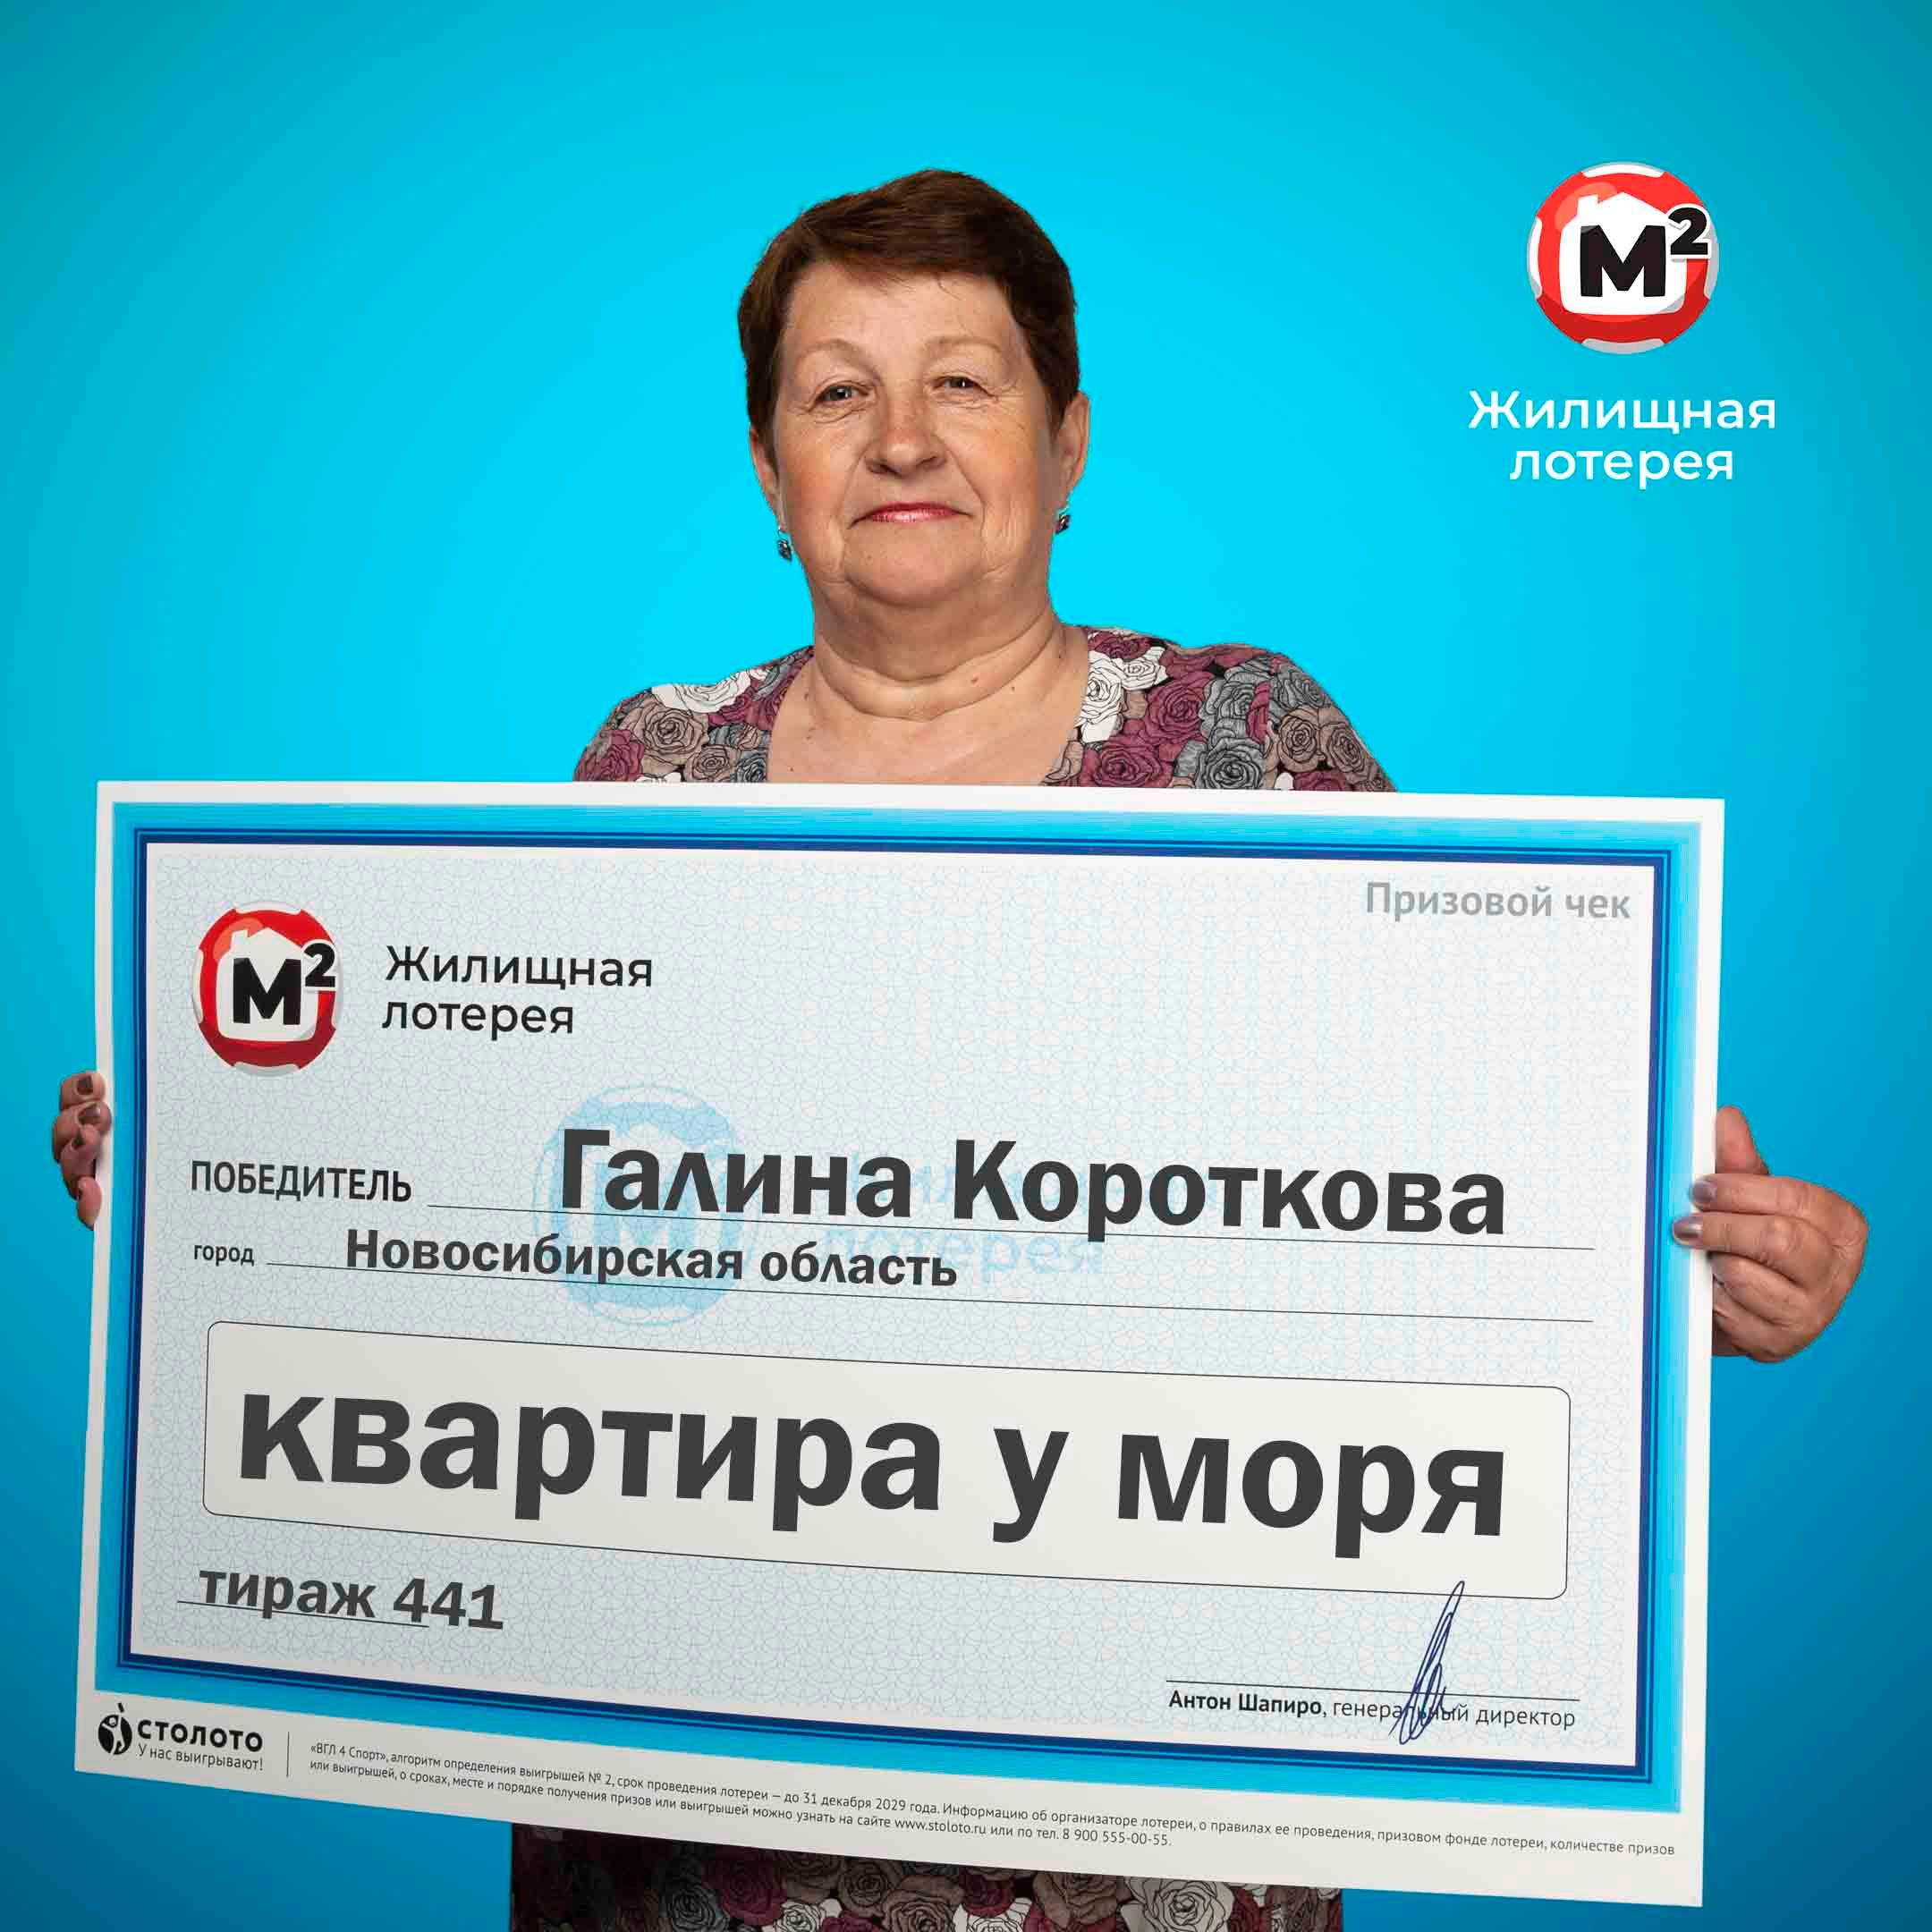 Галина Короткова